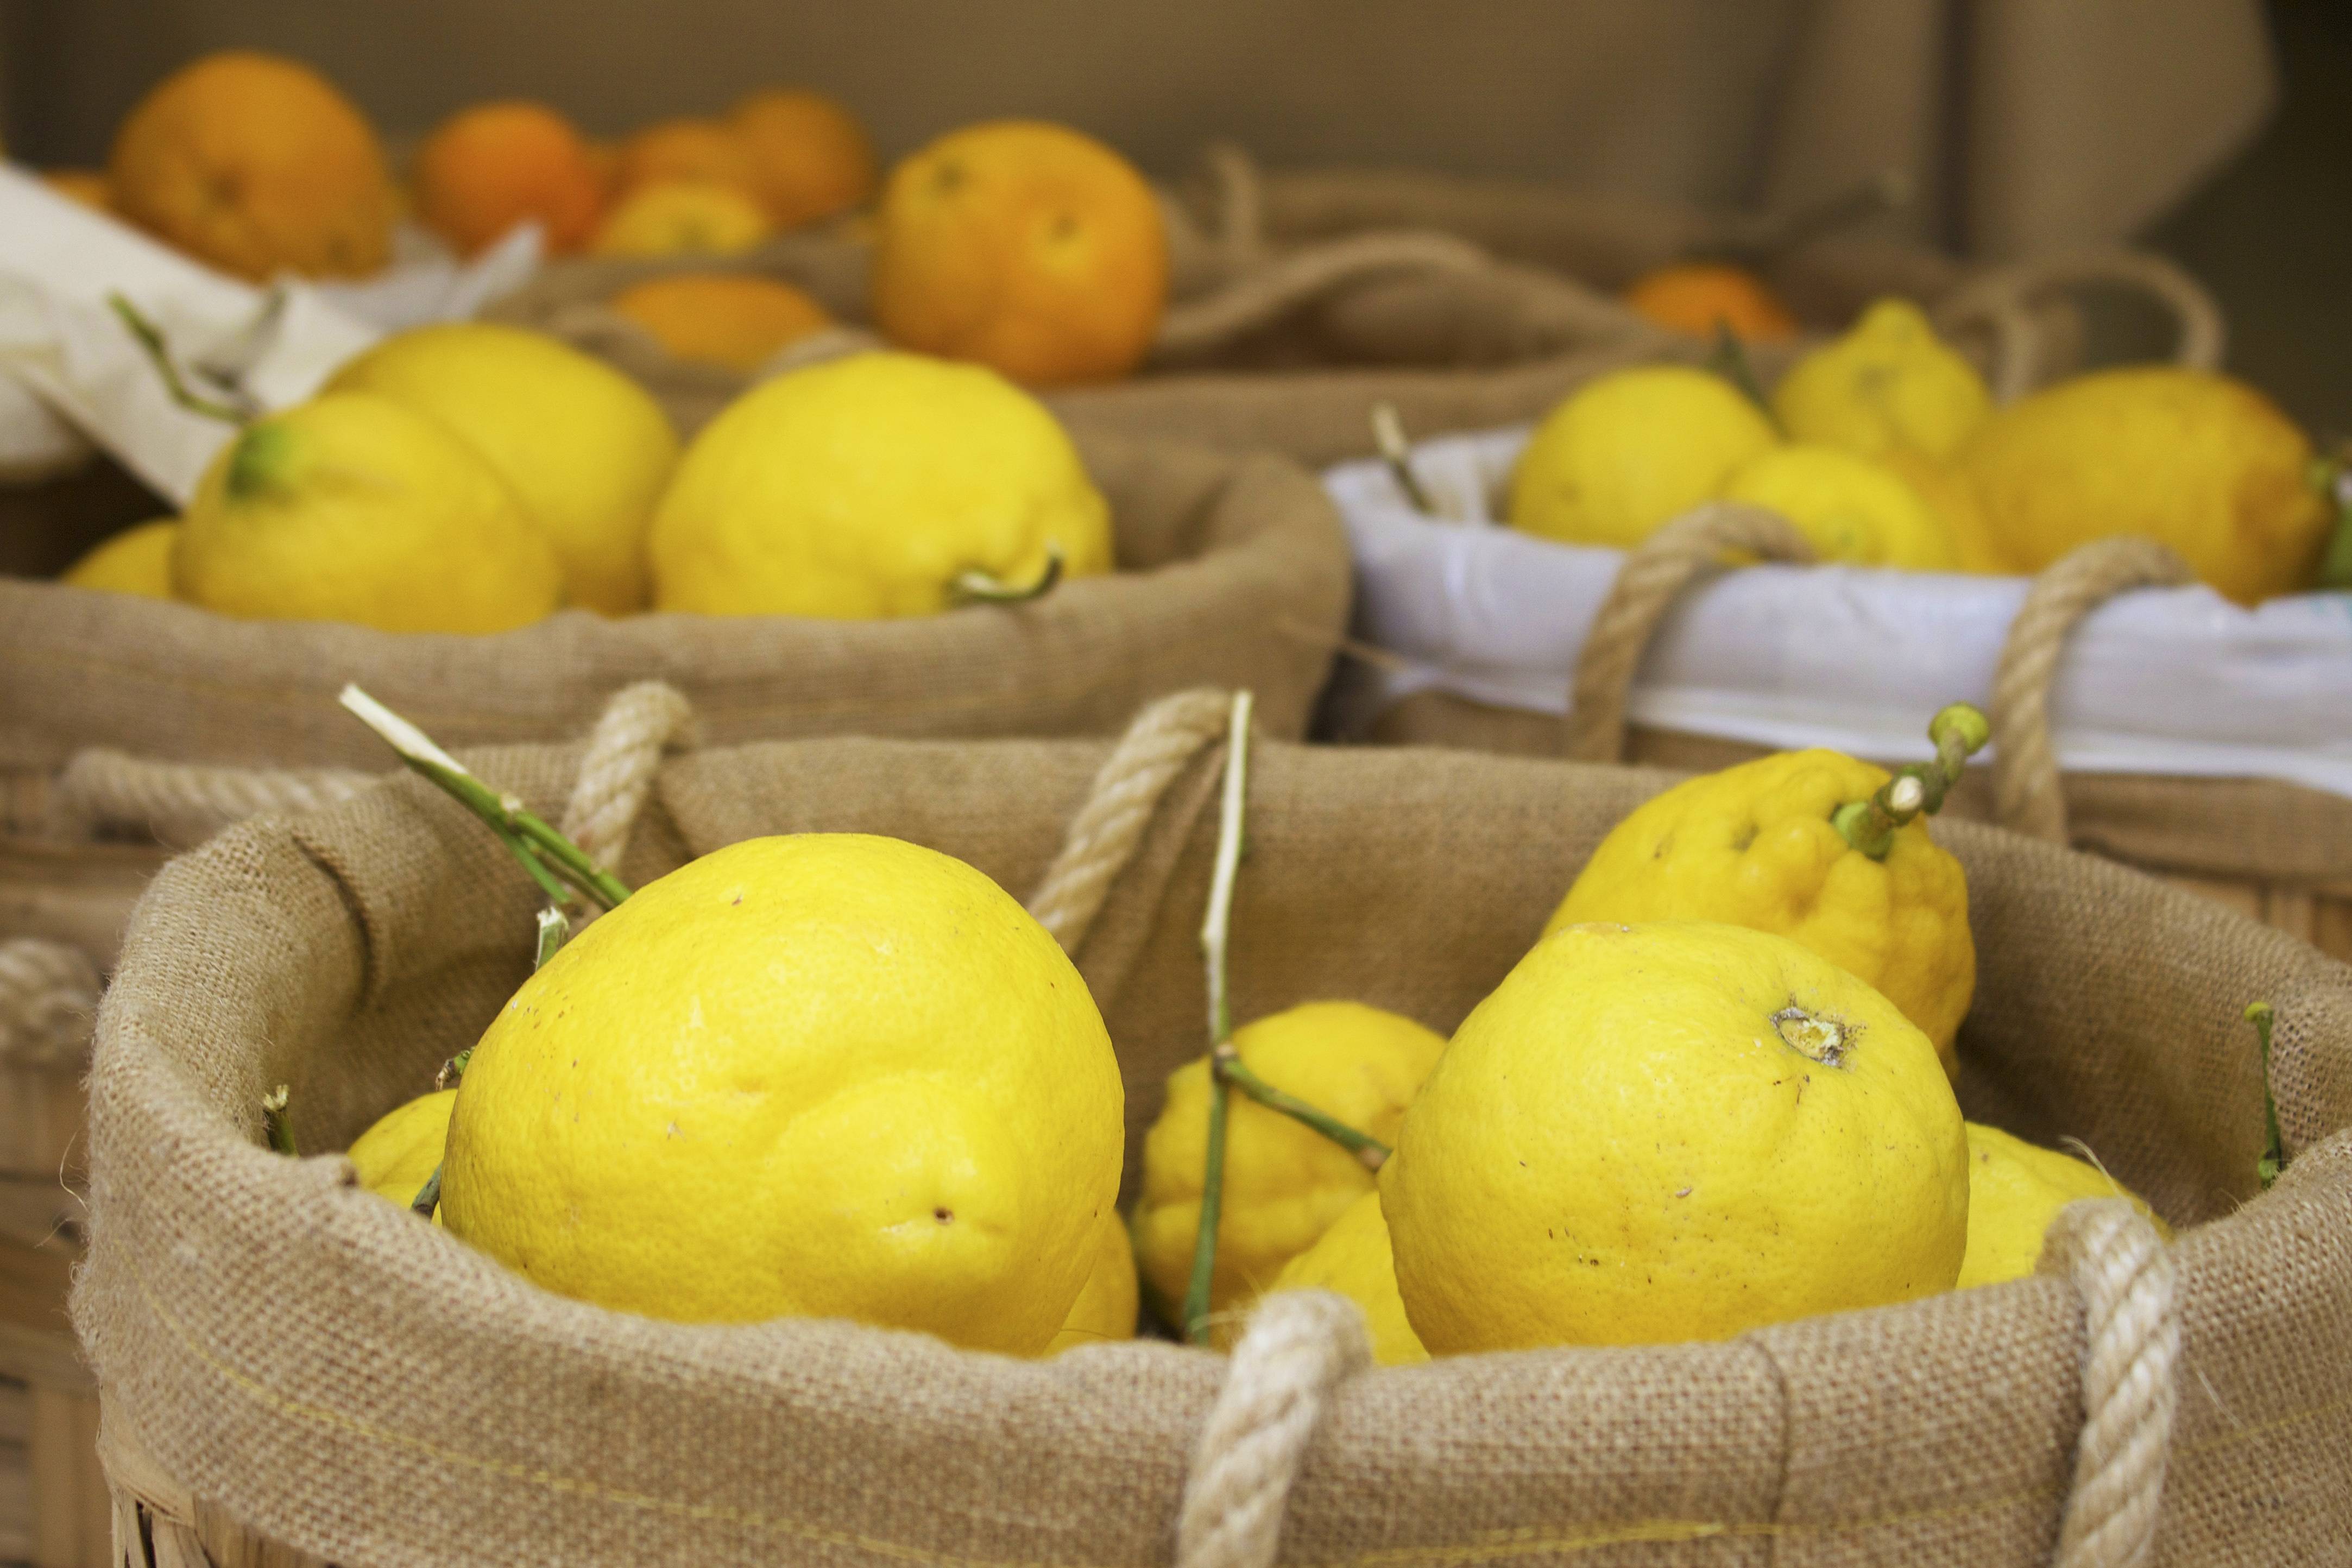 Лучшие способы, как хранить лимоны в домашних условиях